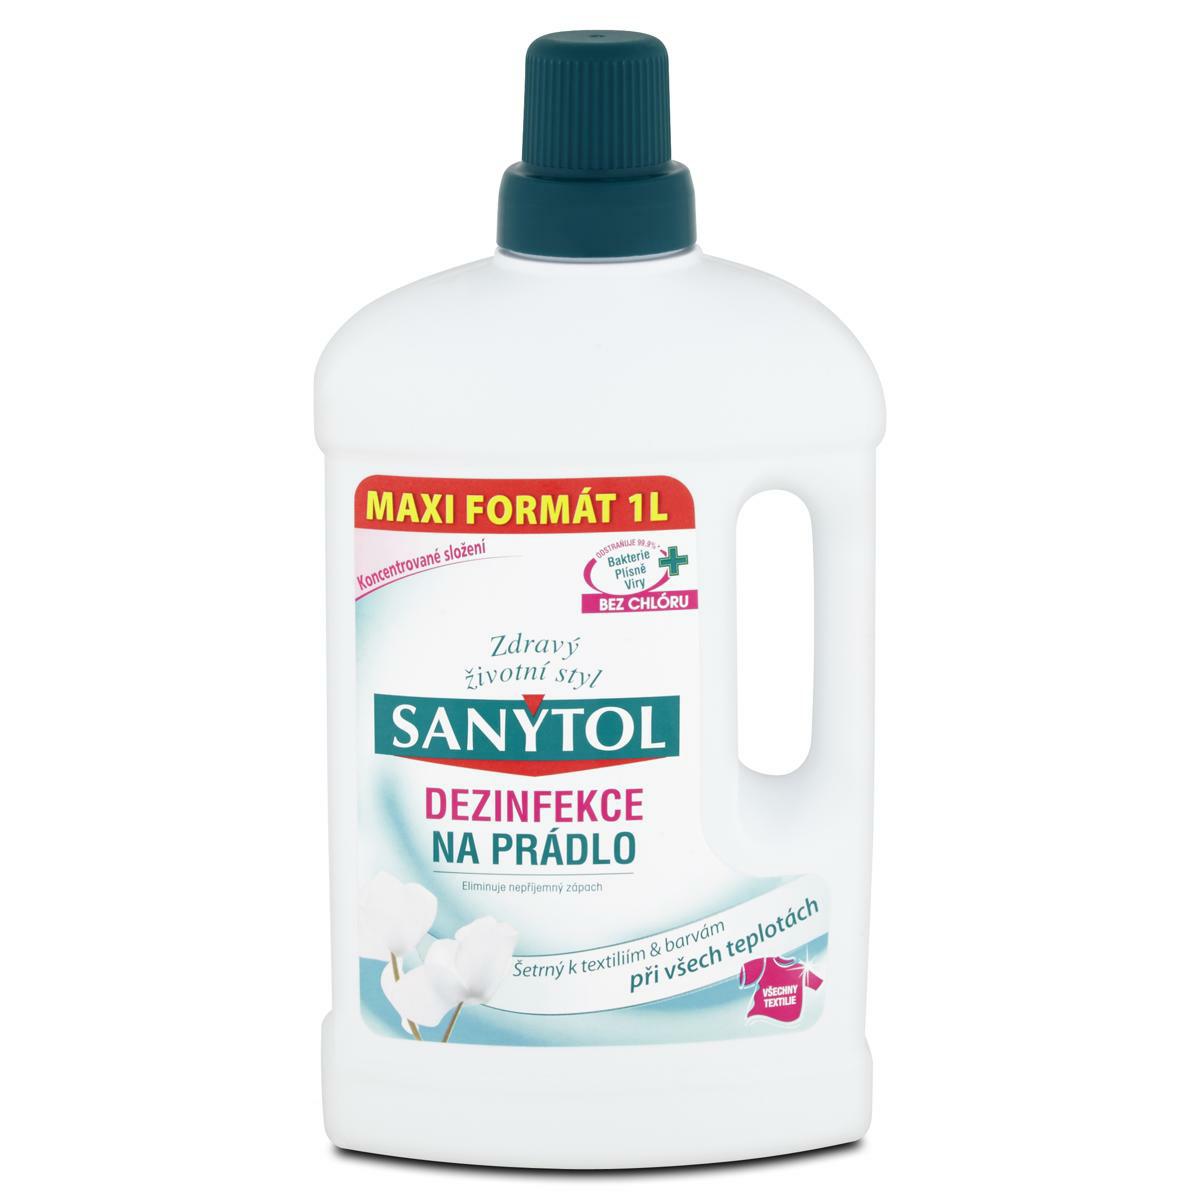 Sanytol dezinfekce na prádlo s vůní bílých květů 1000ml